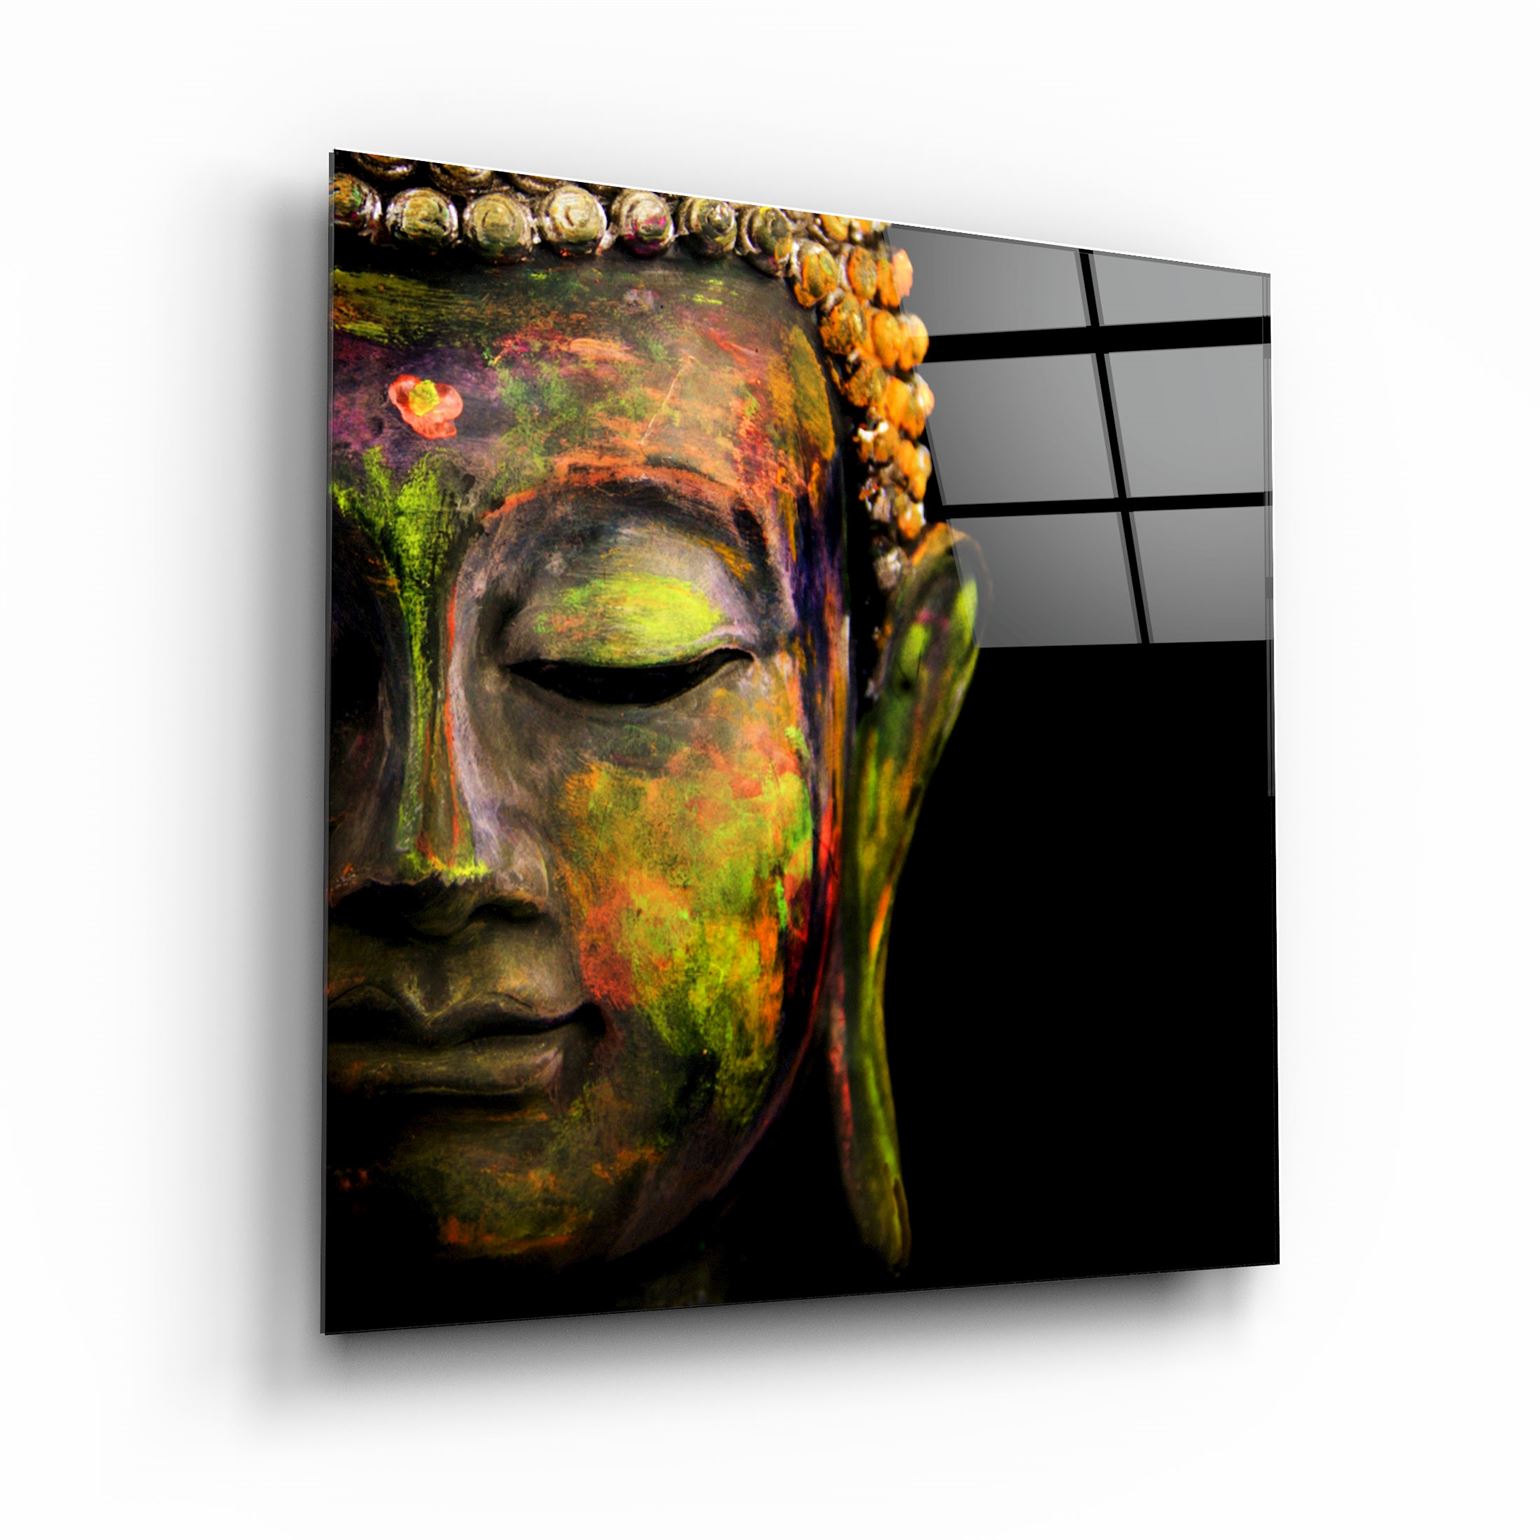 ・"Buddha"・Glass Wall Art